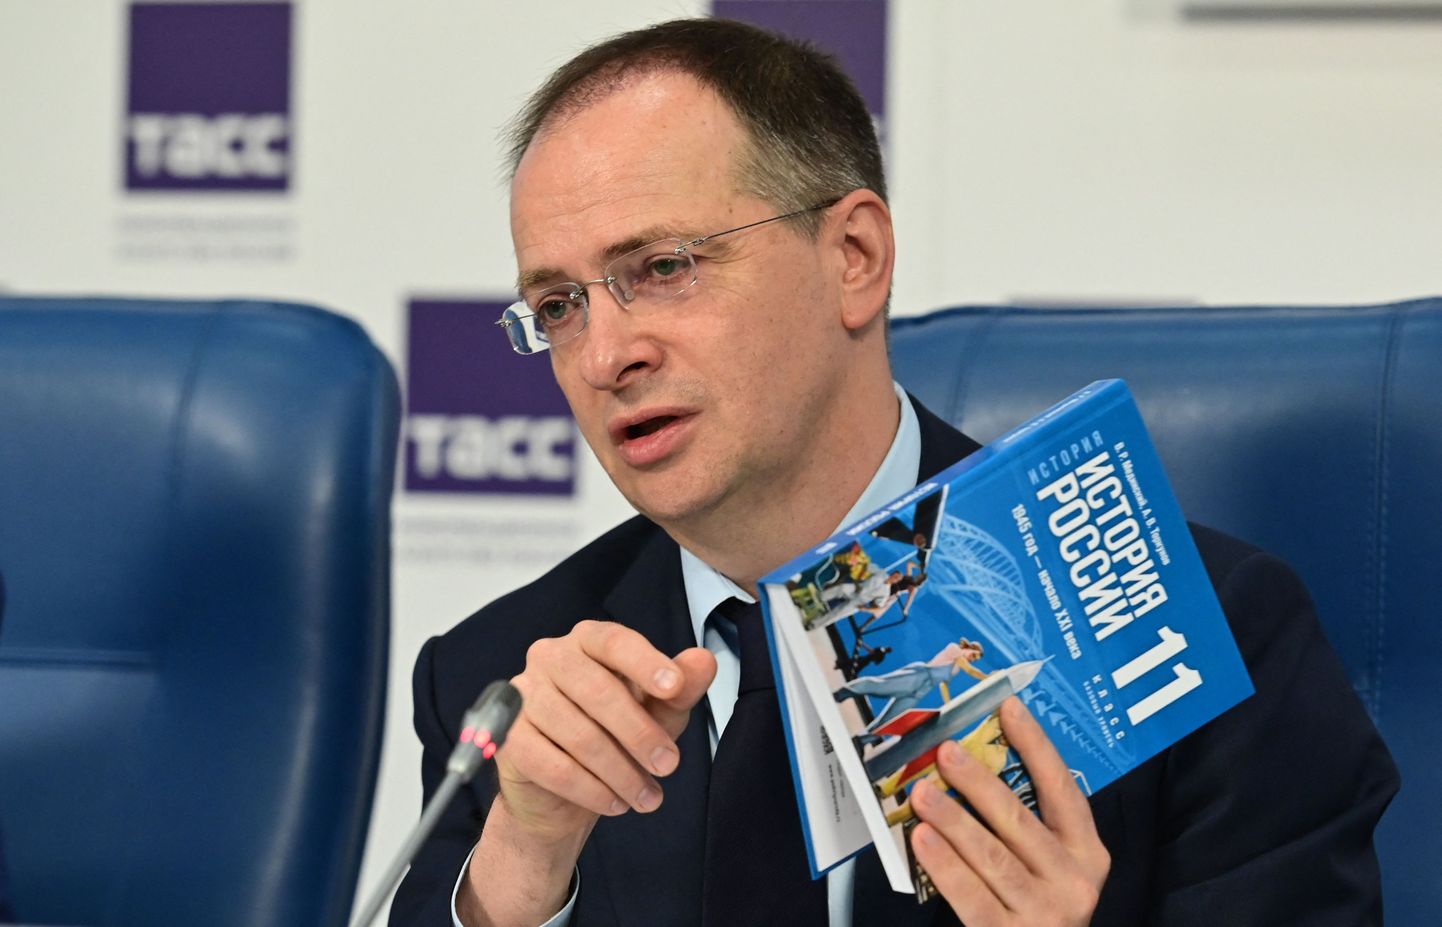 Владимир Мединский на презентации учебника, где на обложке значится его имя.